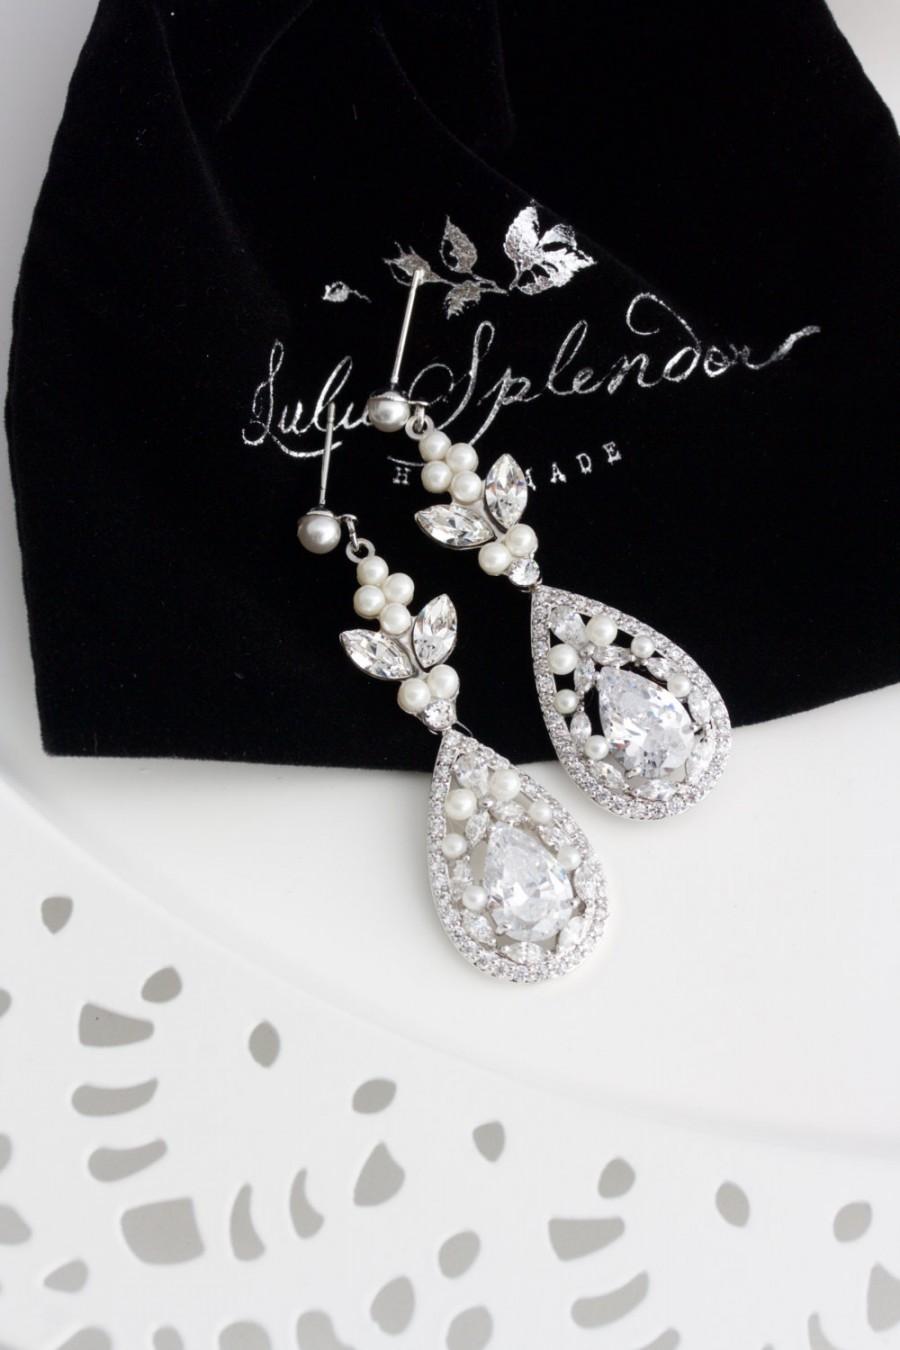 Wedding - Crystal Bridal Earrings Teardrop Wedding Earrings Cubic Zirconia Long Earrings Wedding Jewelry Swarovski Crystal Wedding Jewelry VIVIENNE